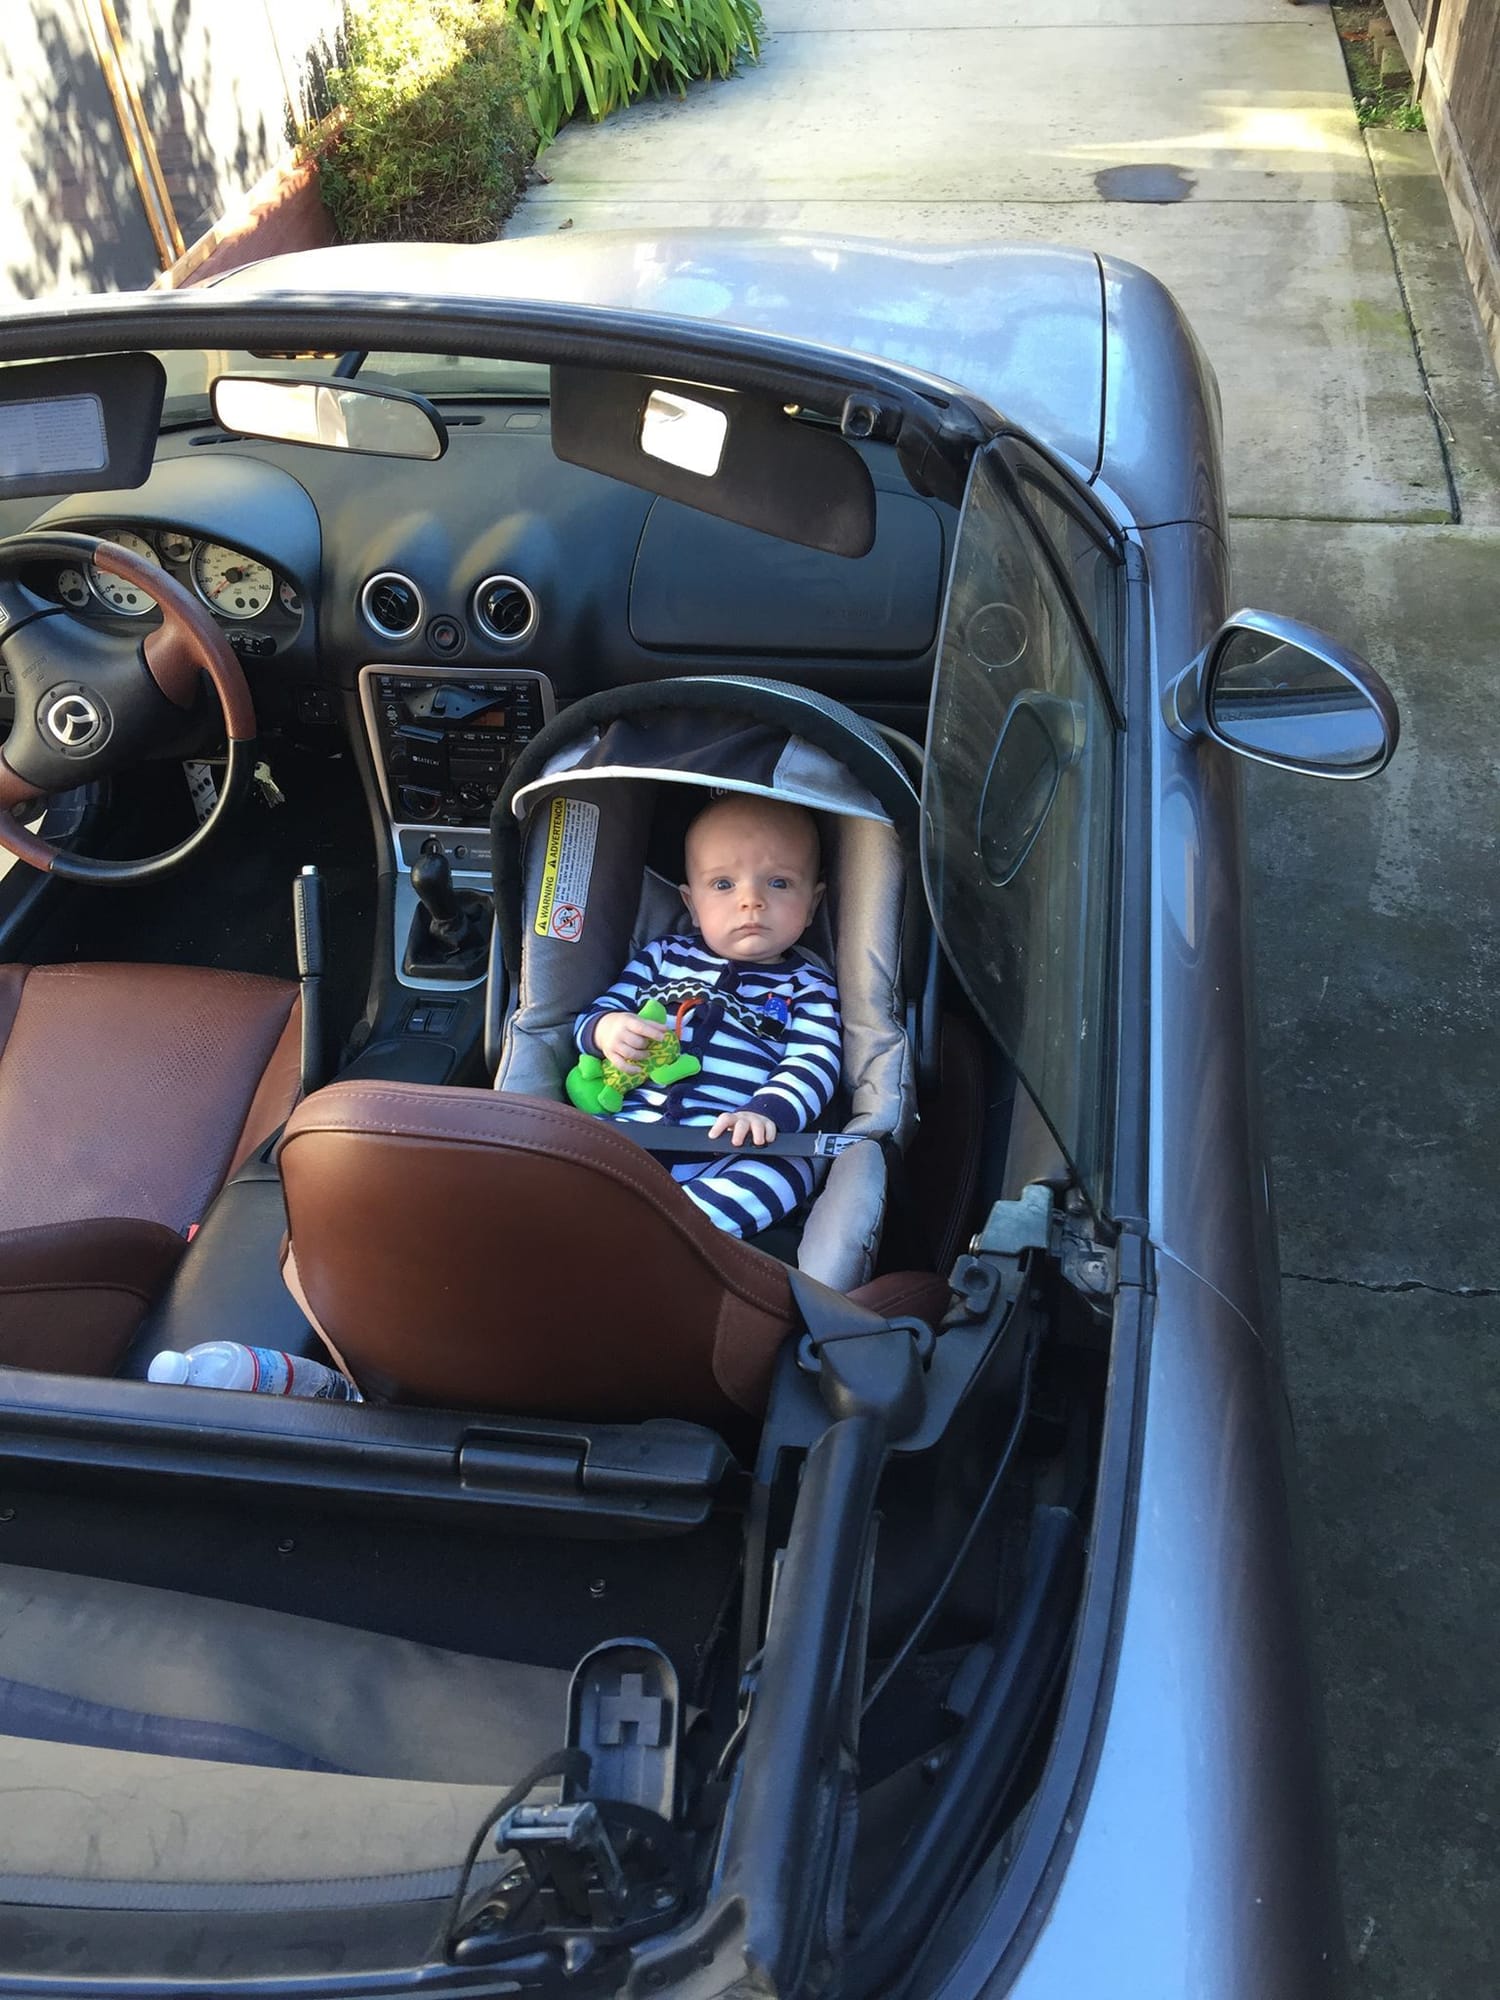 Child S Car Seat In A Miata Miata Turbo Forum Boost Cars Acquire Cats - my kid made my miata in roblox mx 5 miata forum